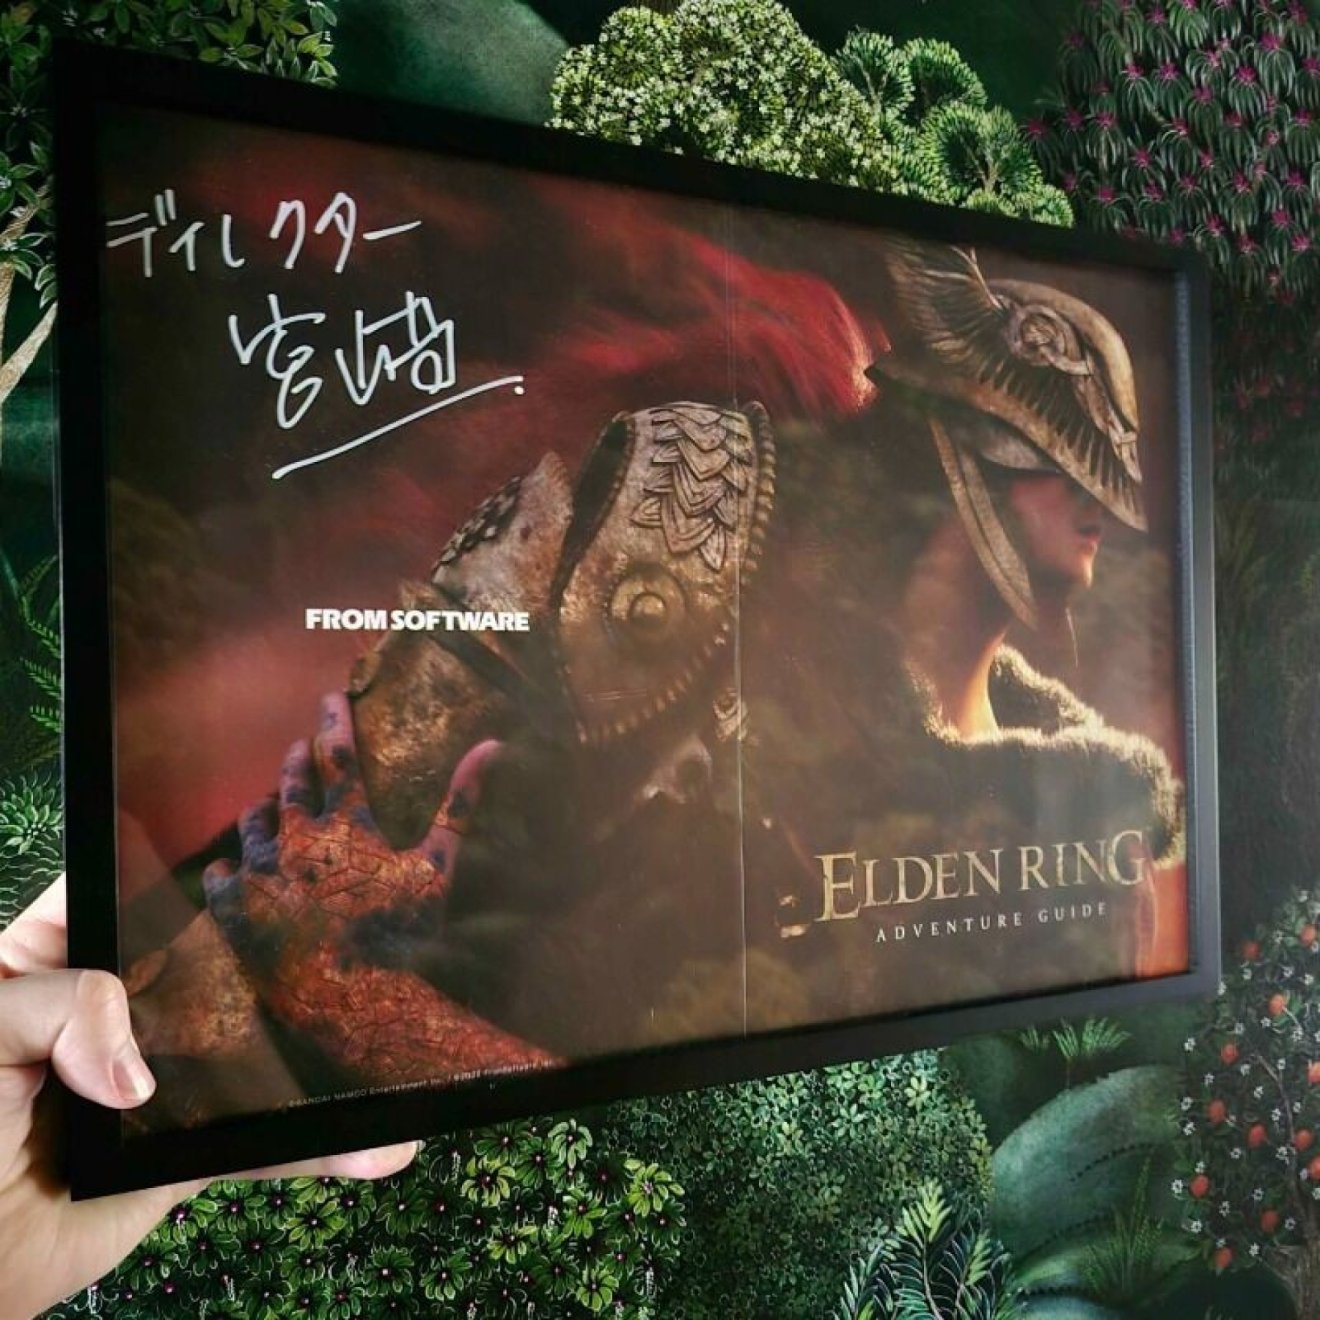 Elden Ring Poster